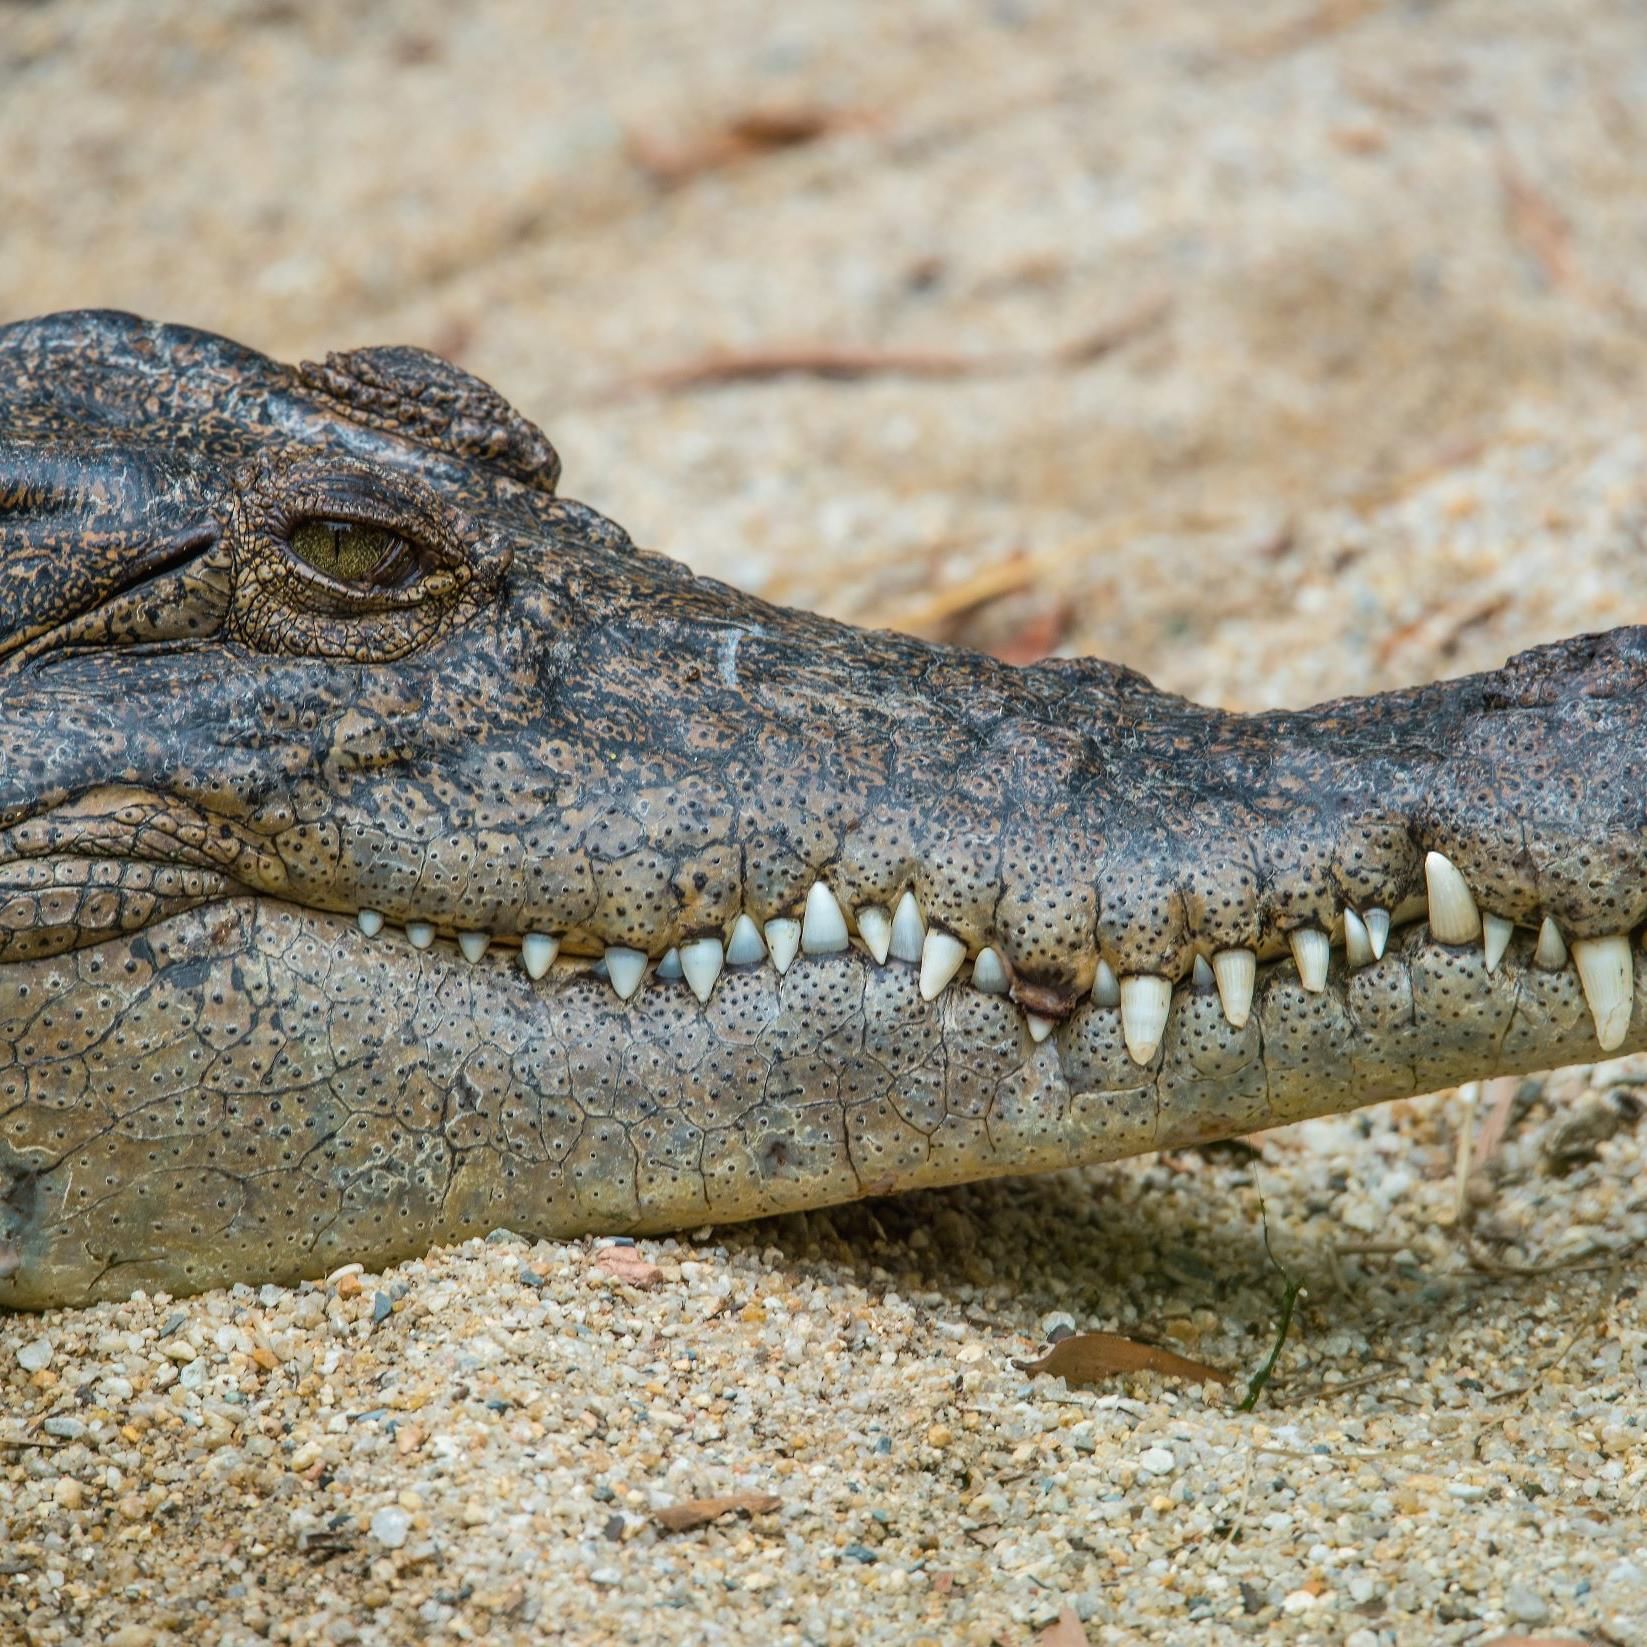 A Saltwater Crocodile captured in Gatorland near DOT Hotels